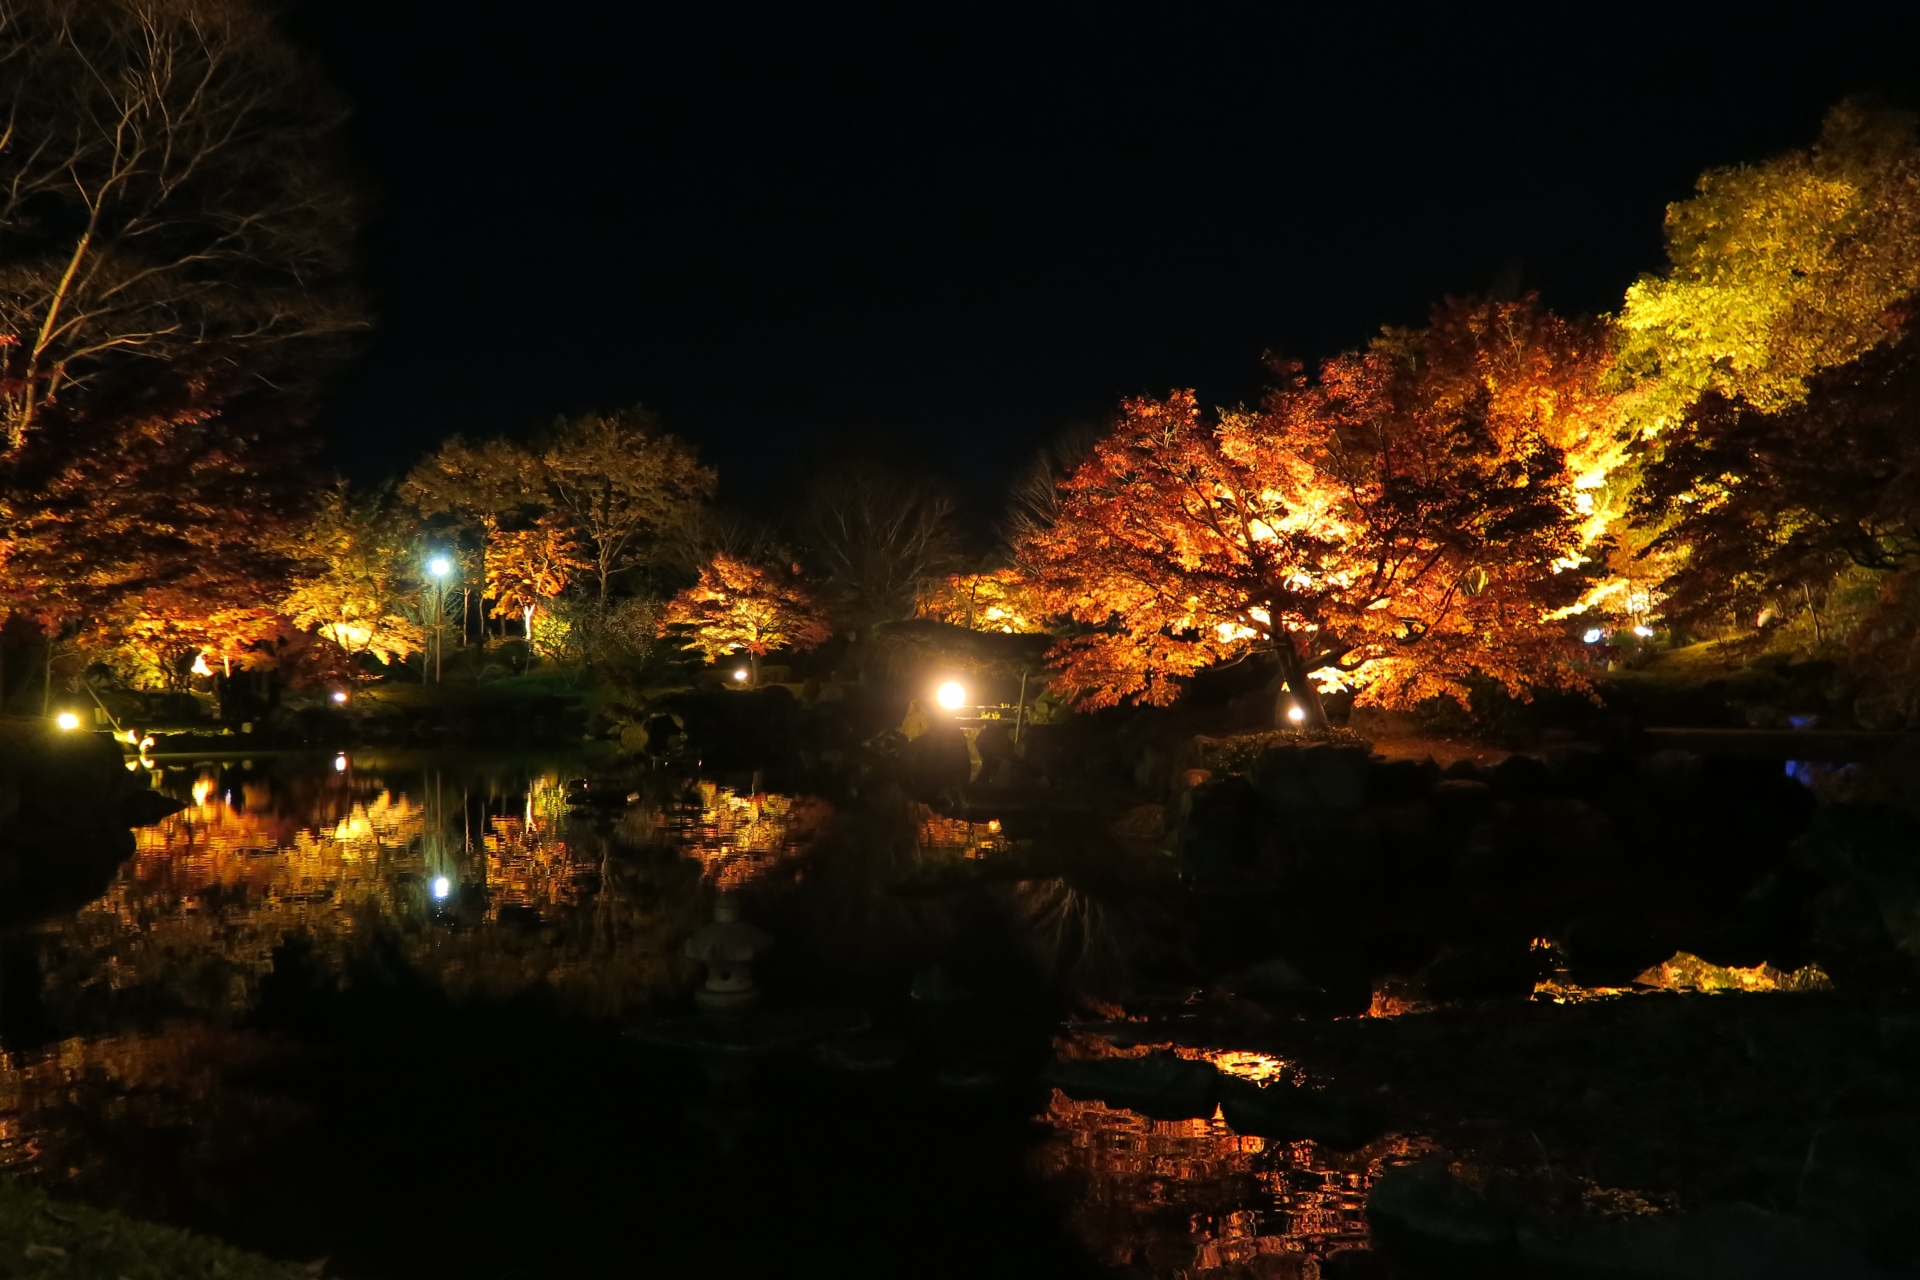 桜山公園の紅葉21 見頃時期やライトアップ クチコミなど紹介 情報発信ブログサイト Blue Rose